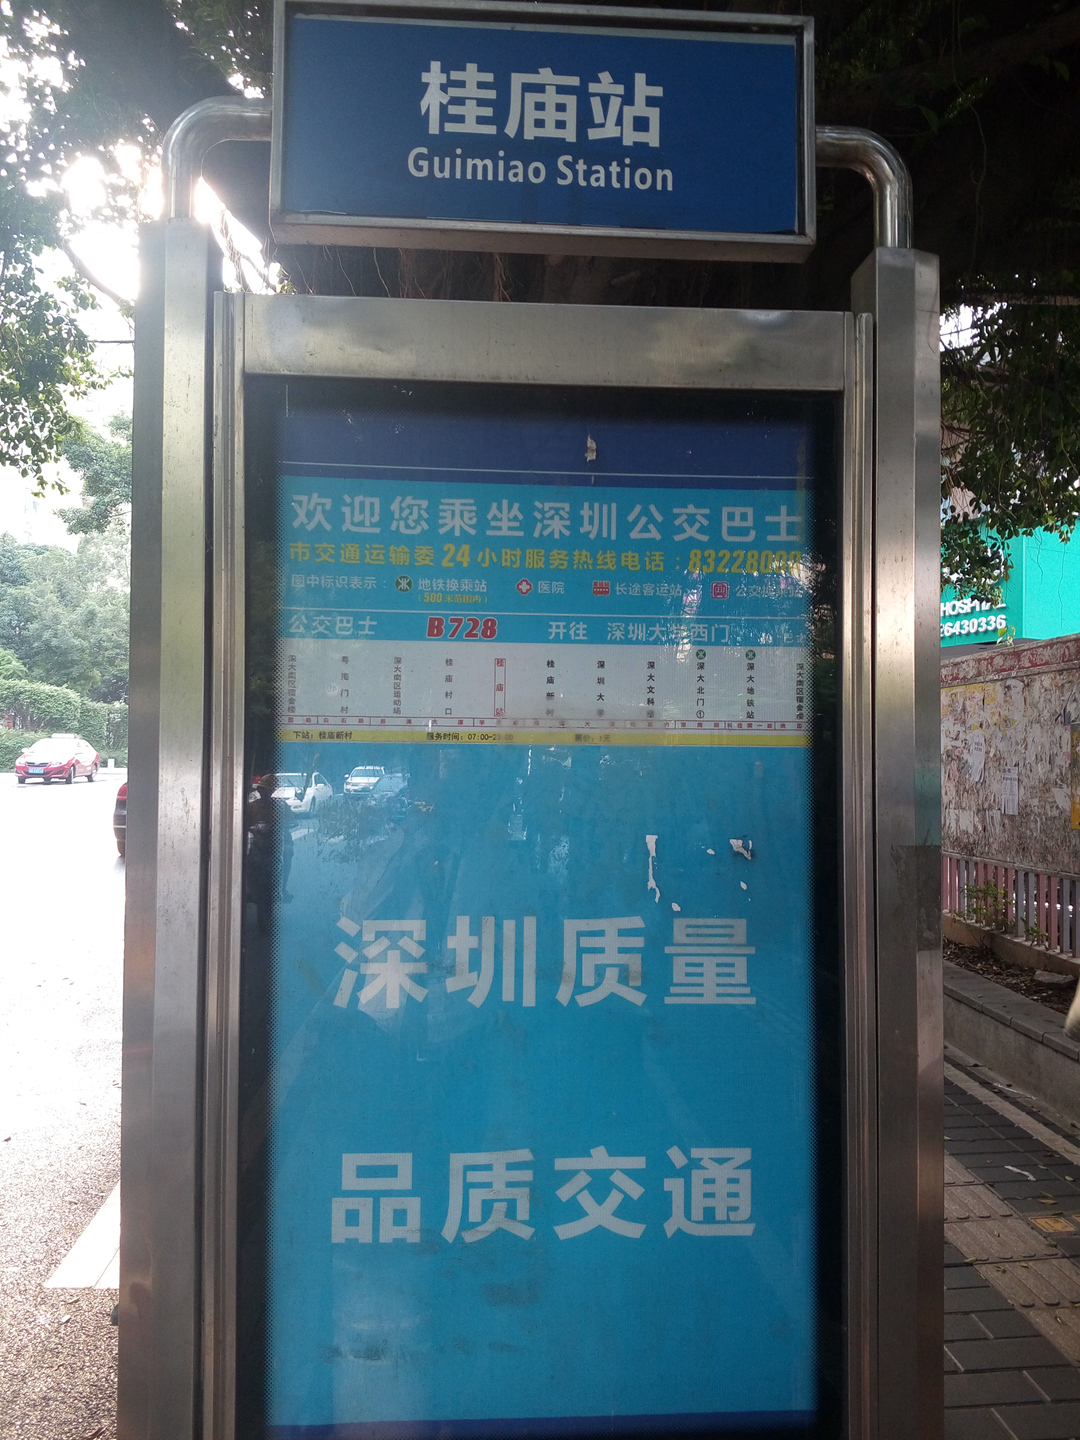 下图为后海立交公交站站牌照片:桂庙站:b728,从深大南区宿舍楼到深圳